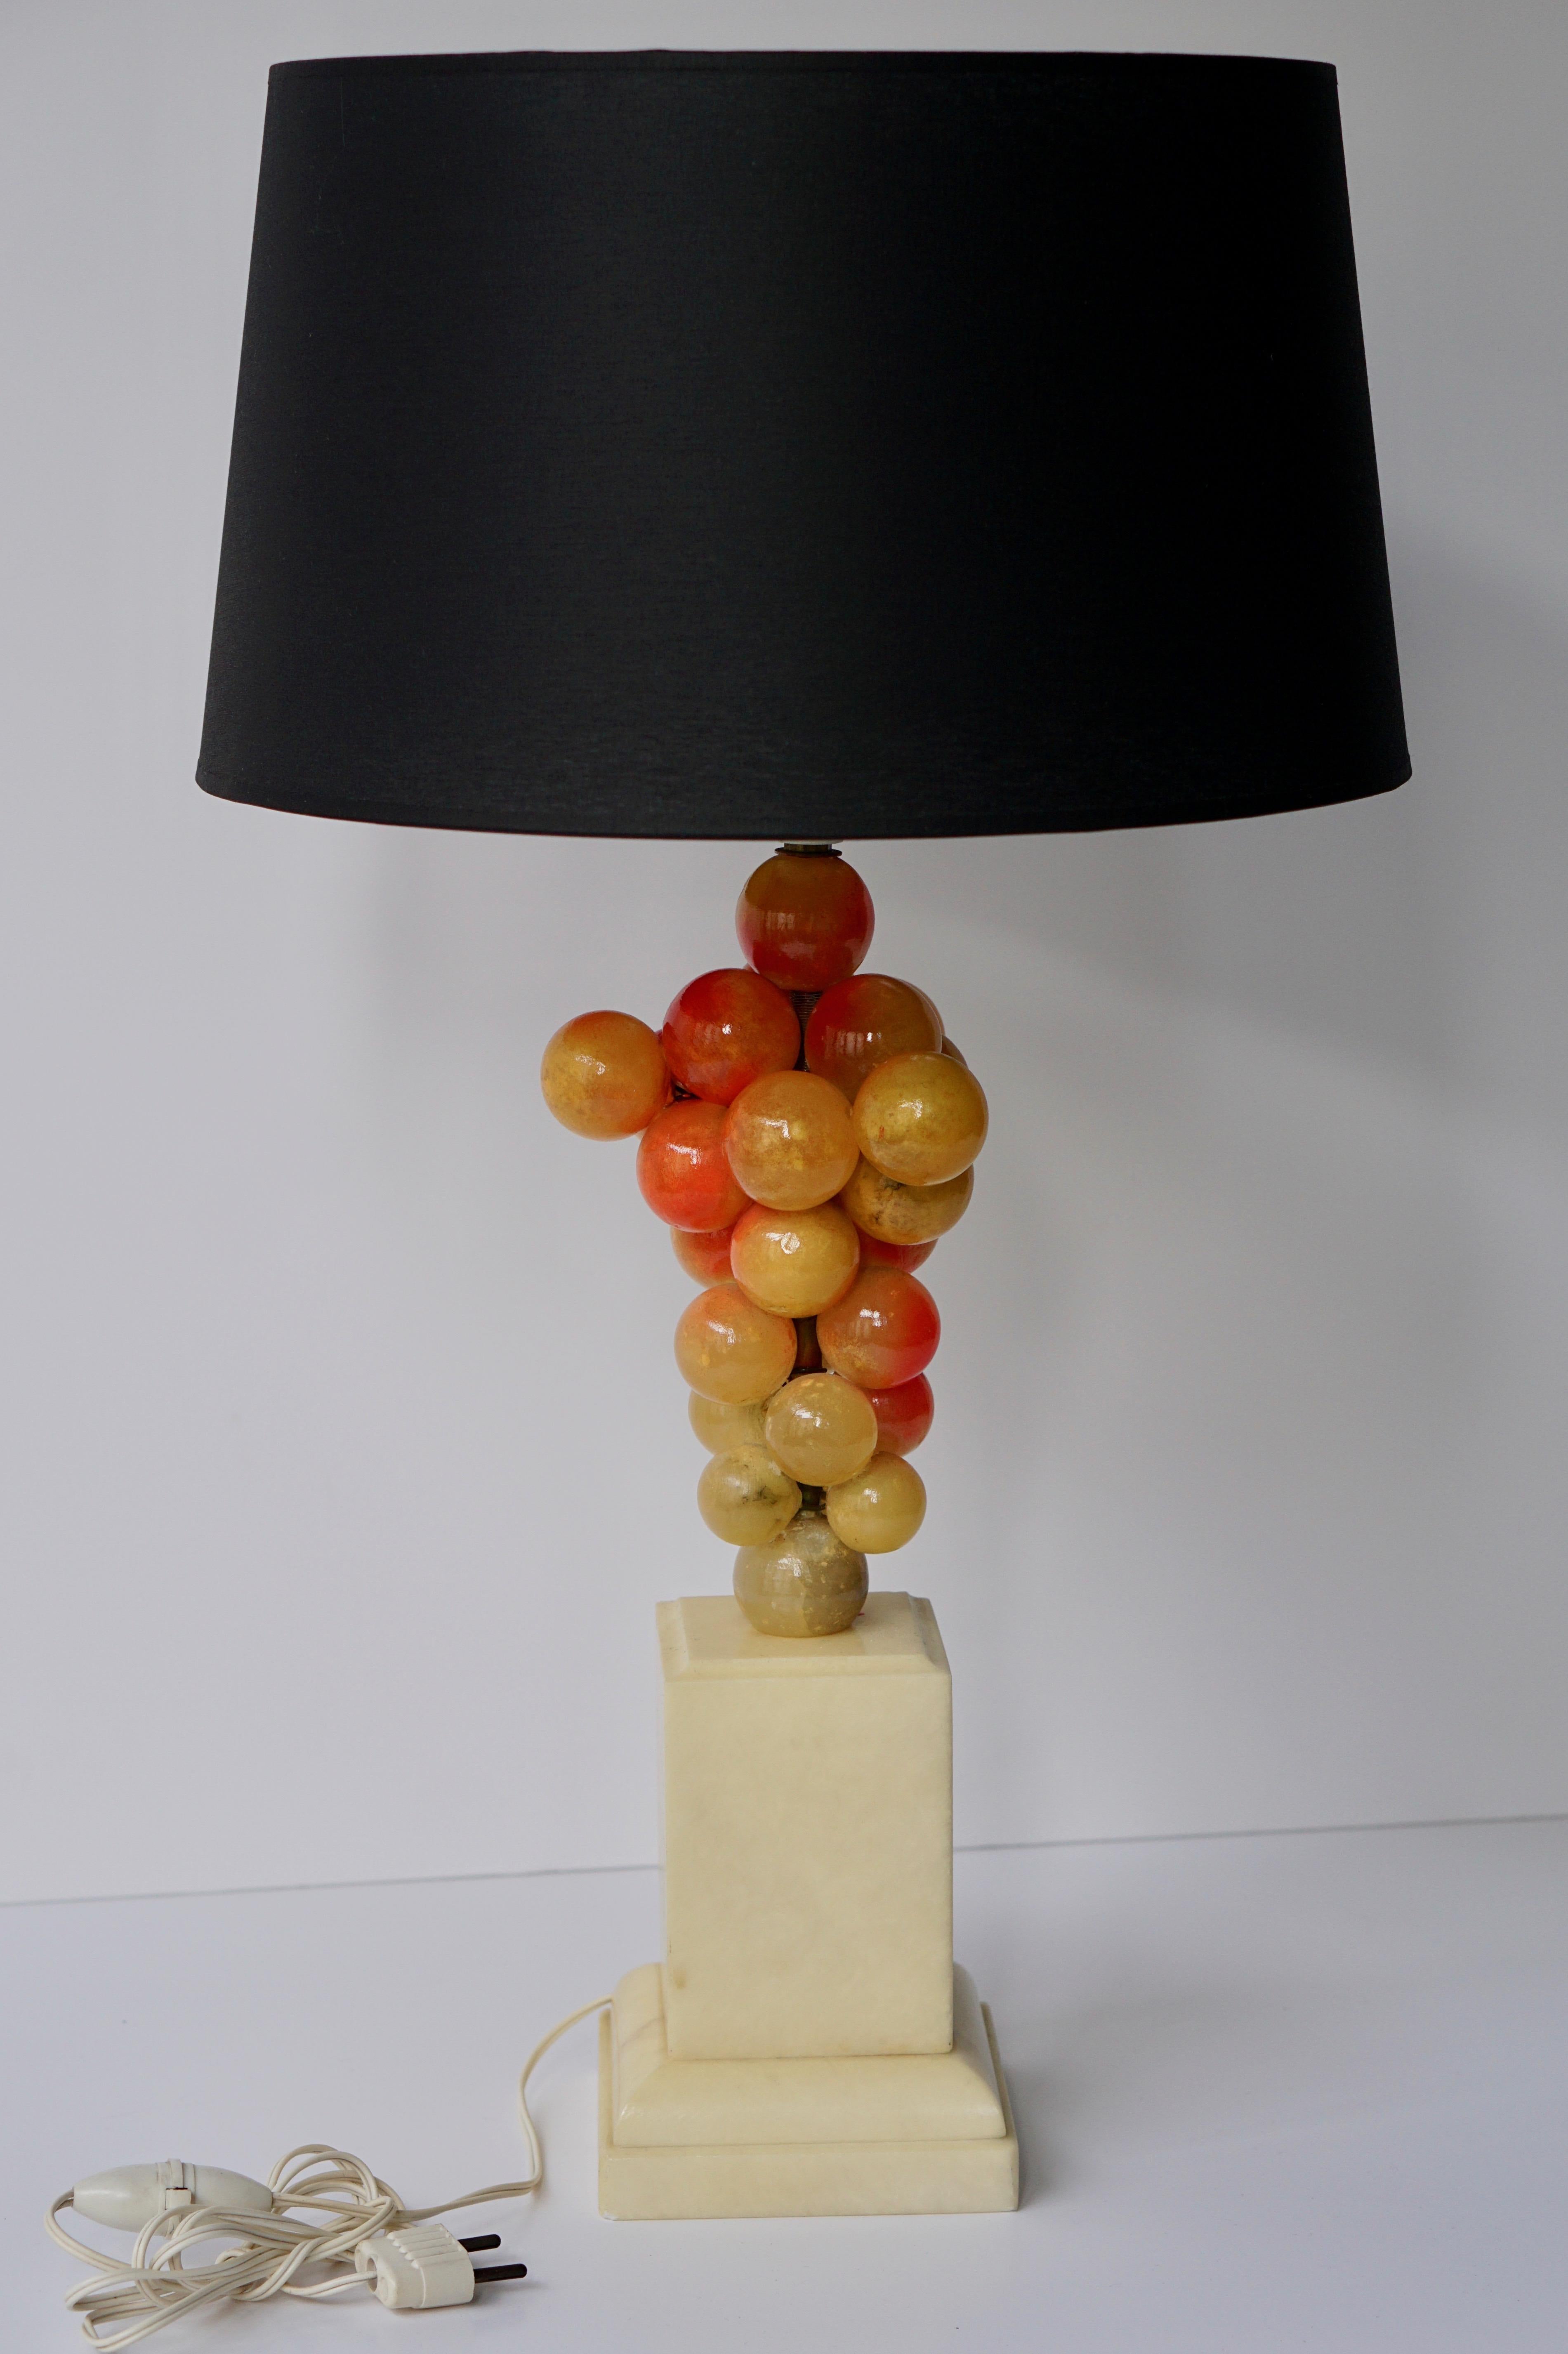 Alabaster Traube Tischlampe.
Maße: Höhe Sockel mit Fassung 46 cm.
Breite 14 cm.
Tiefe 14 cm.

Der Lampenschirm ist nicht im Preis enthalten.